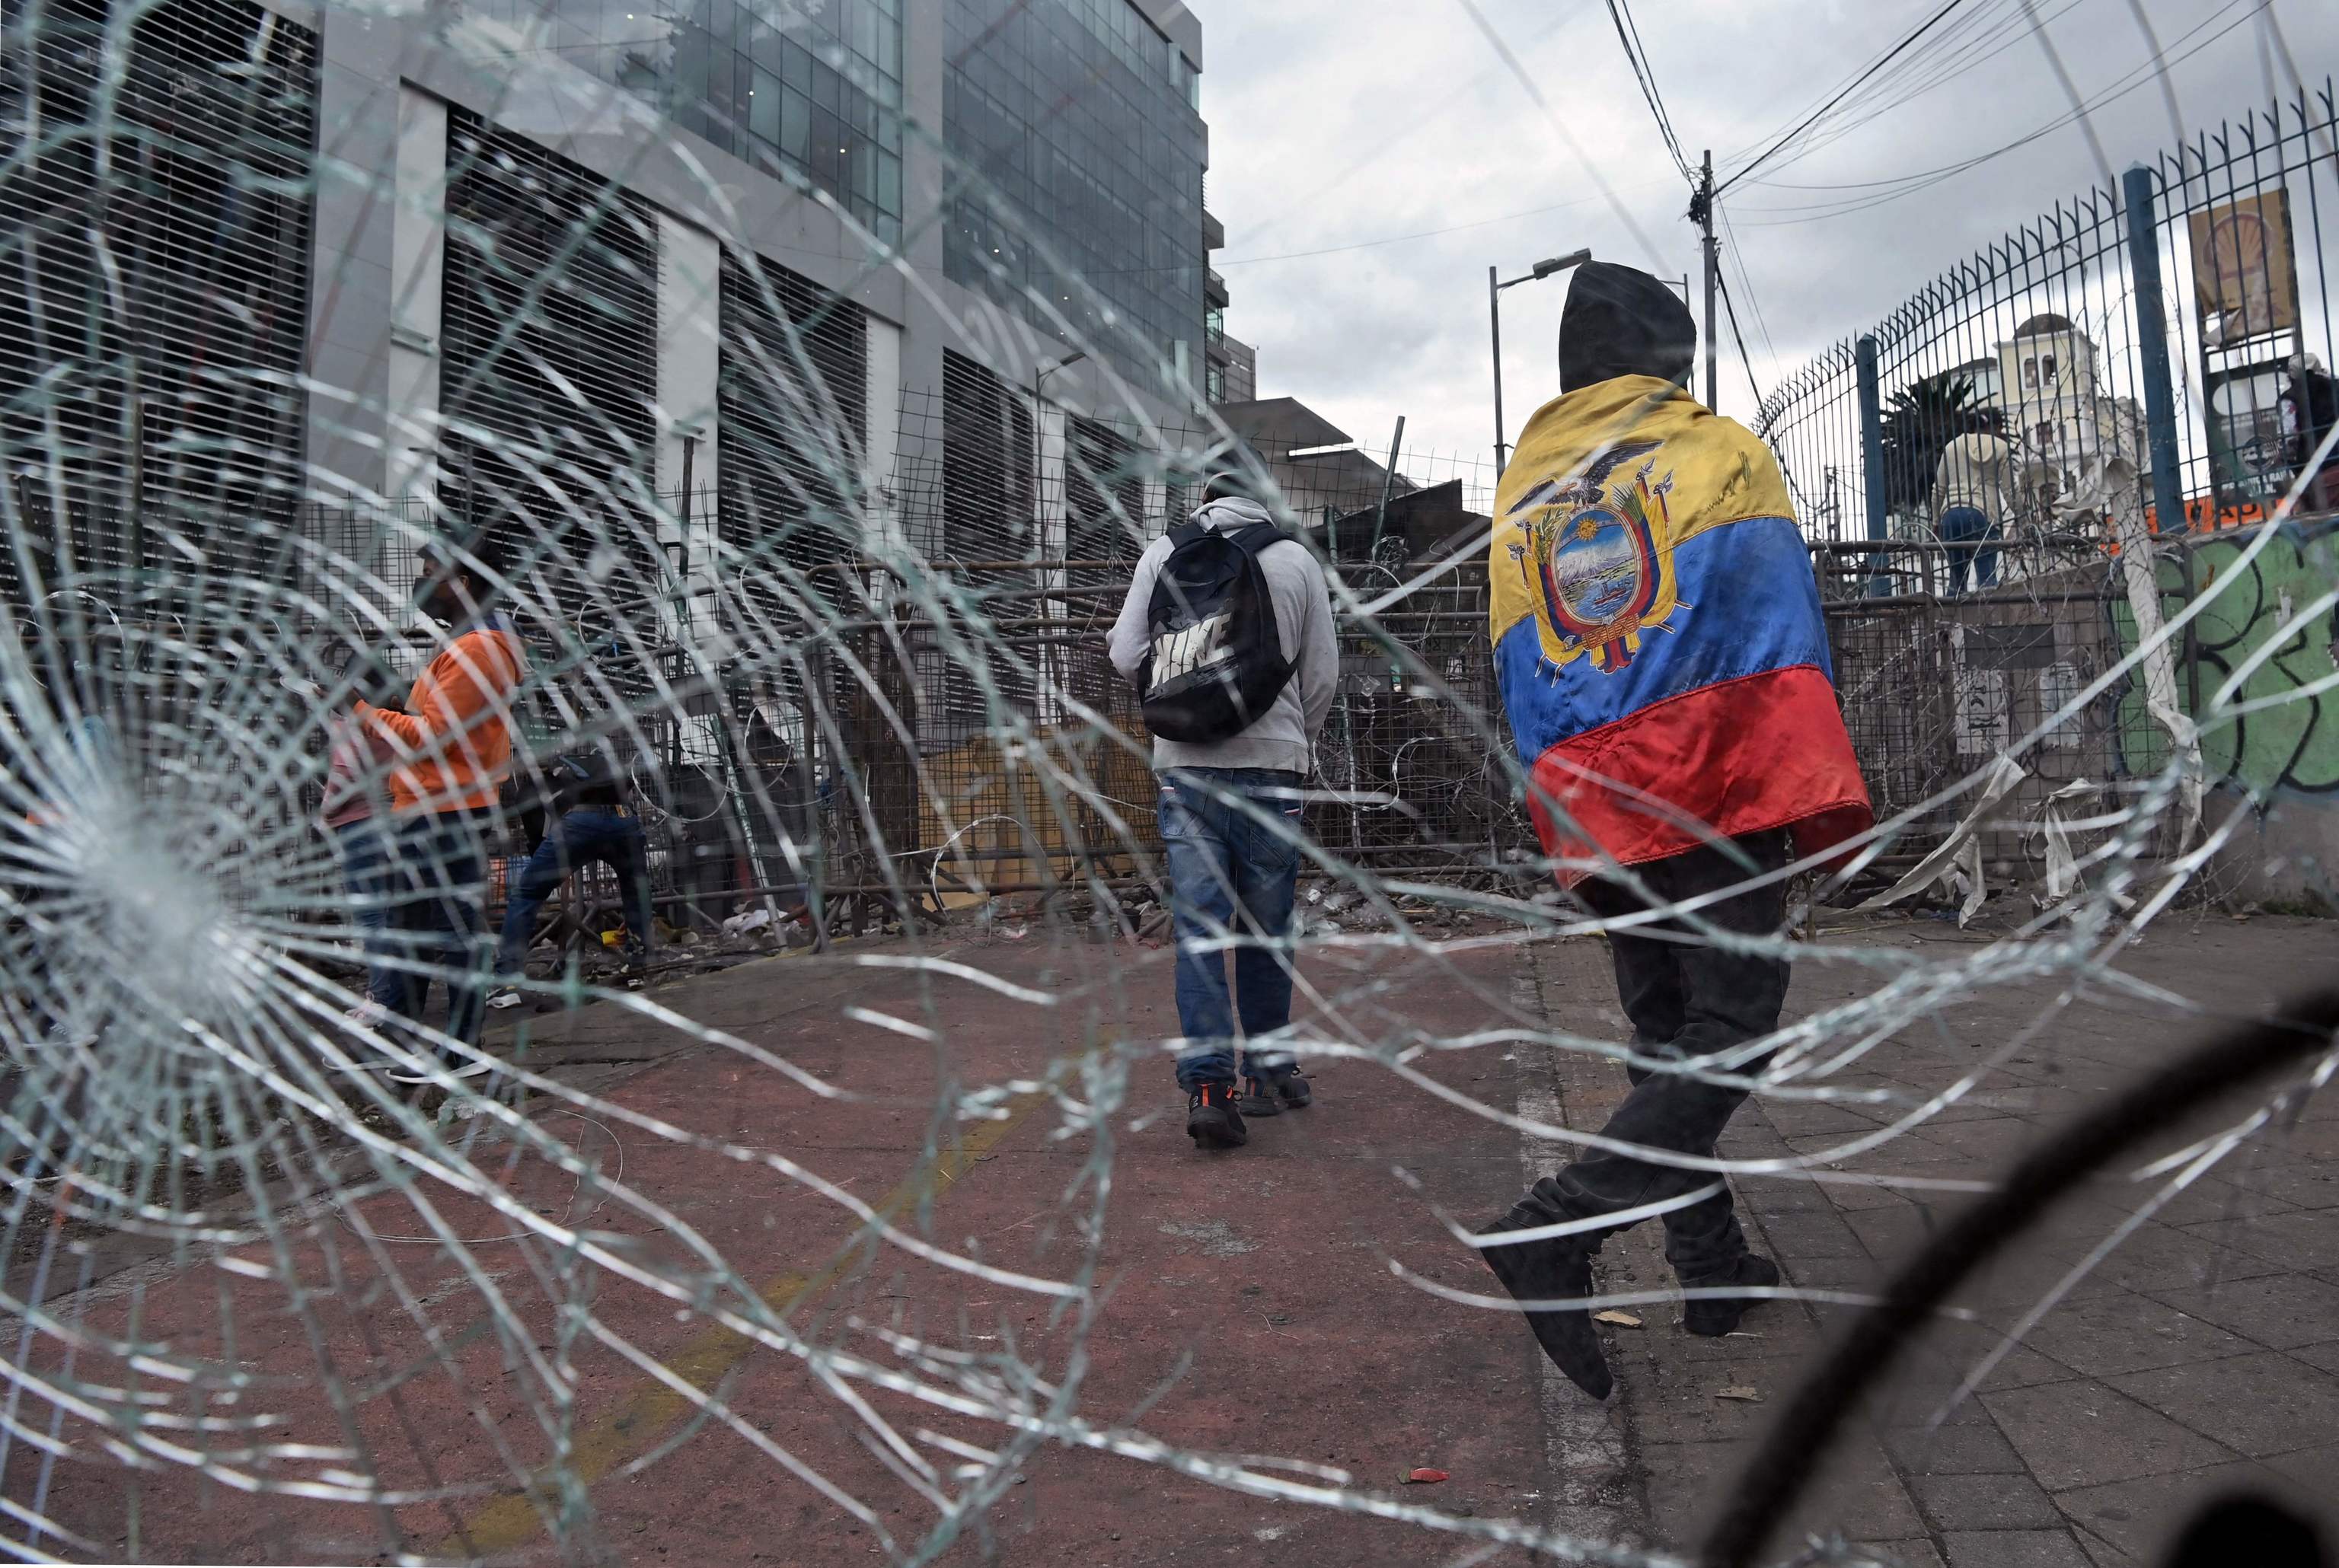 Un indígena envuelto en la bandera de Ecuador camina junto a unos cristales rotos junto a una barricada en los alrededores de la Asamblea Nacional.